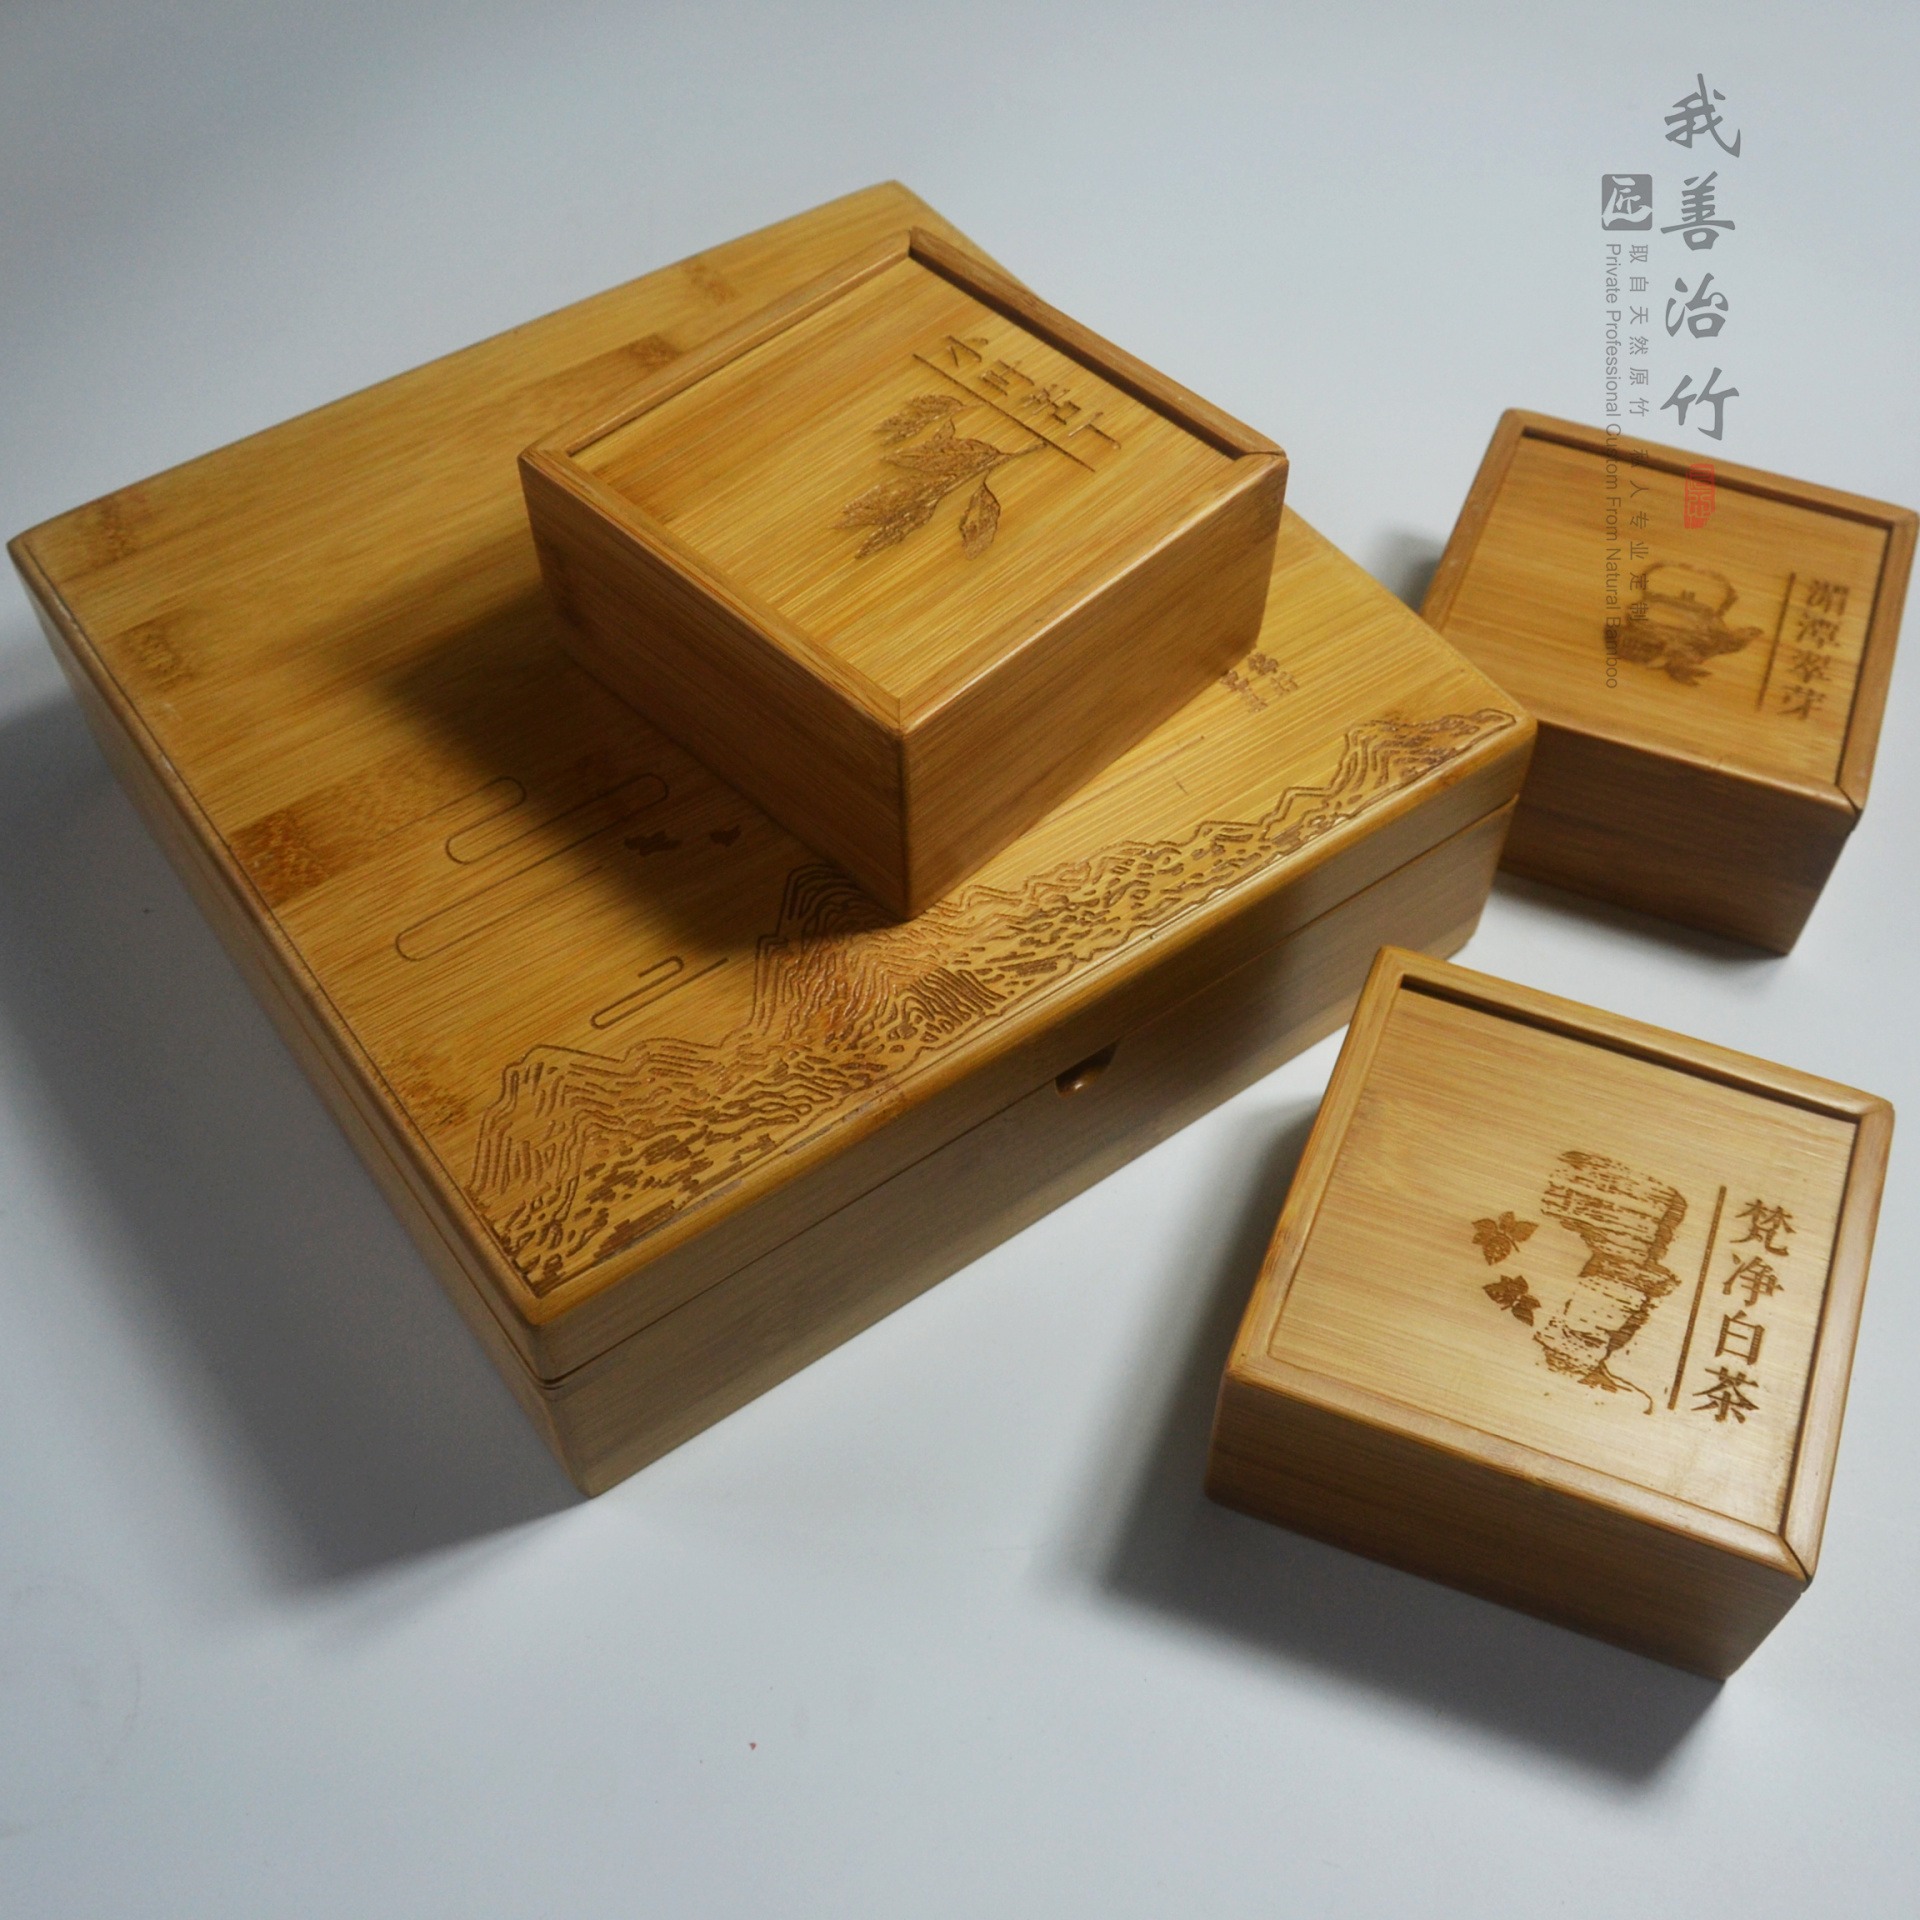 竹盒竹包装竹质茶叶盒竹子咖啡礼盒茶叶月饼包装竹制品 热卖 推荐